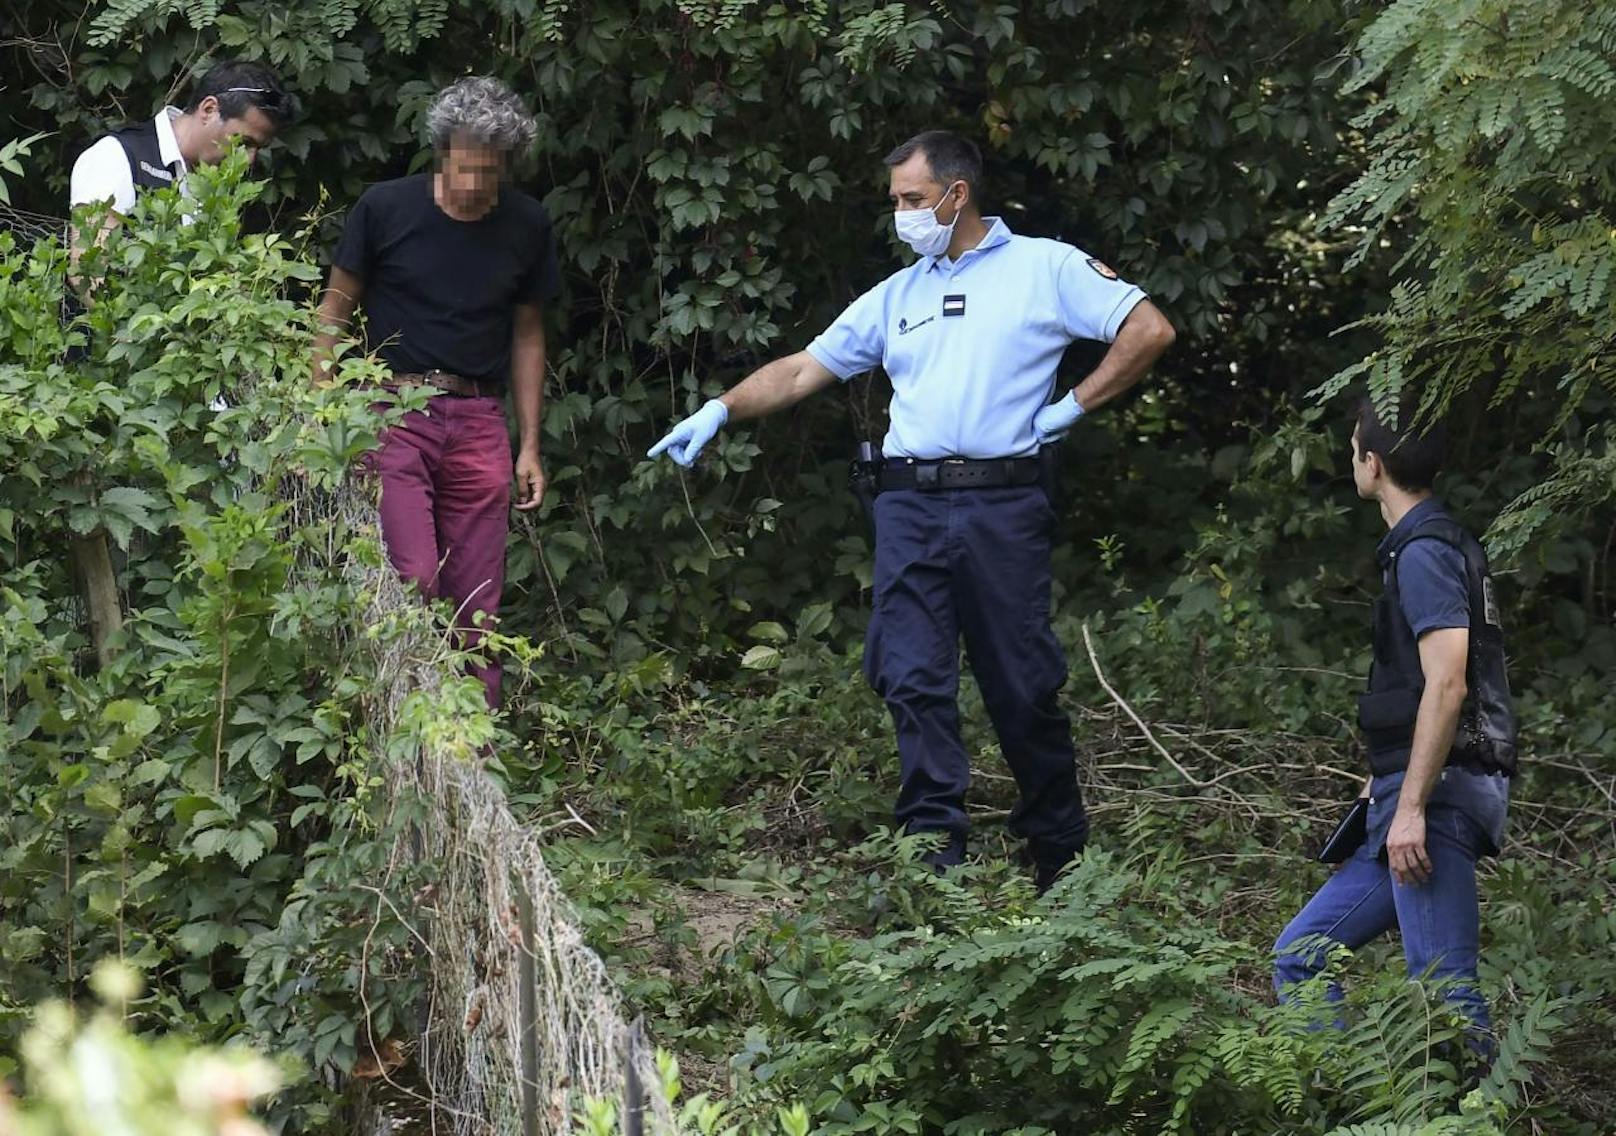 Die gesamte Umgebung der Gemeinde Pont-de-Beauvoisin wurde von den Einsatzkräften durchkämmt und zahlreichen Freiwilligen. Bis jetzt konnte das Kind noch nicht gefunden werden. (4. September 2017)